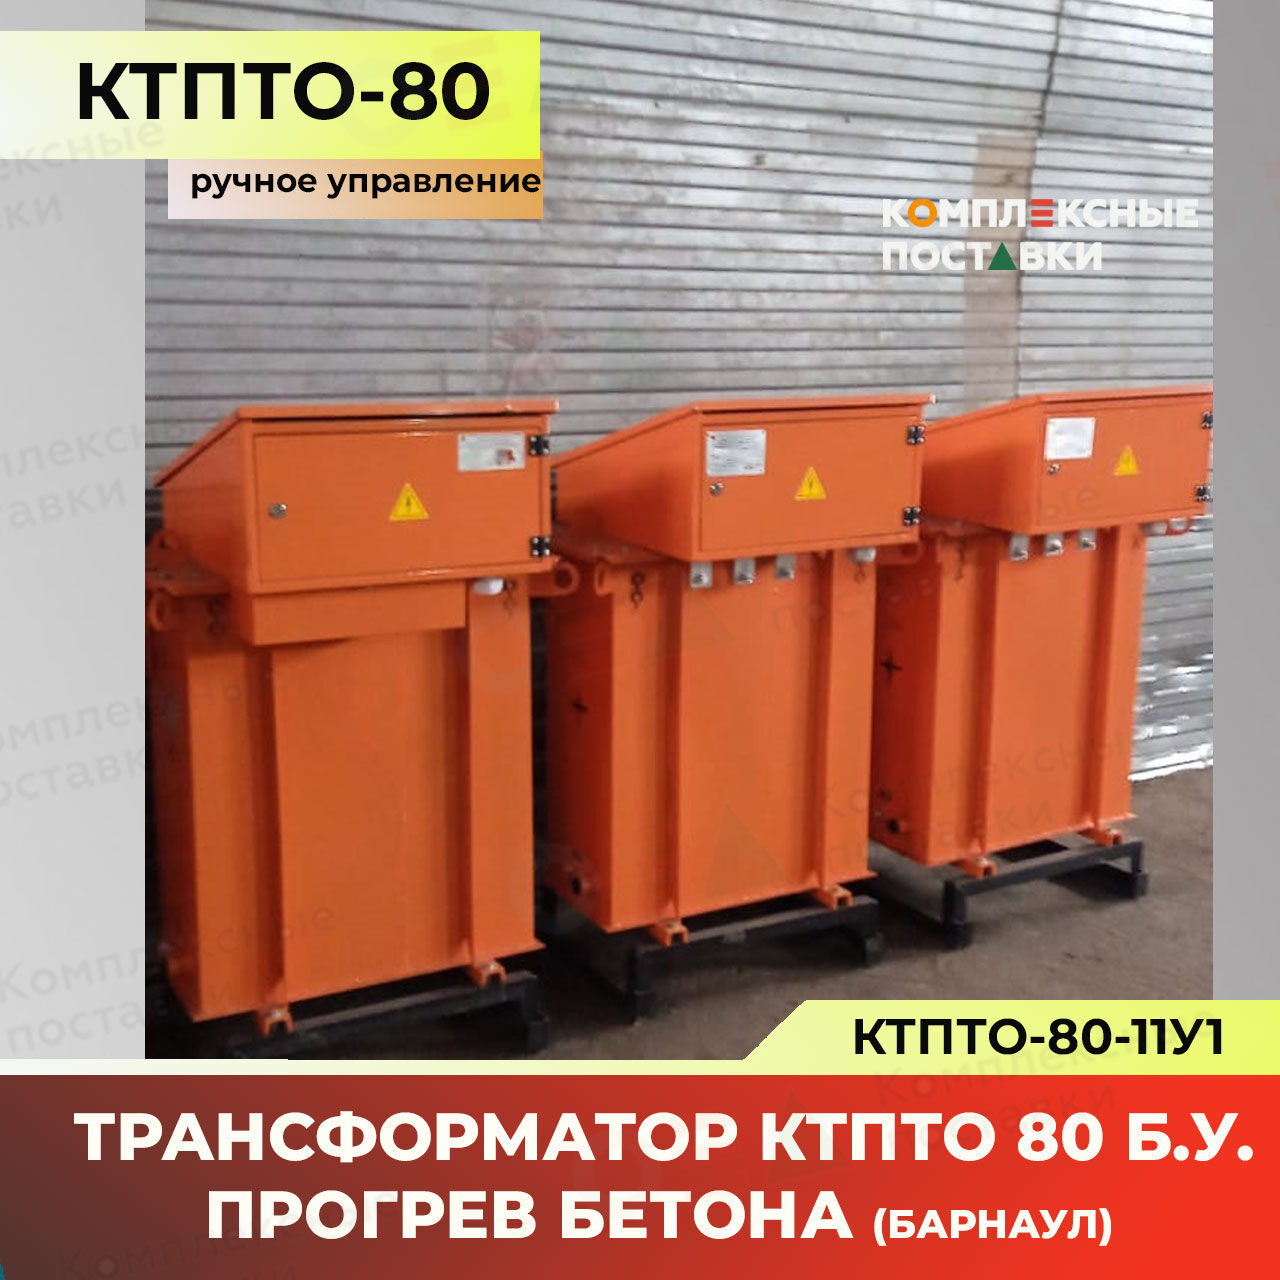 КТПТО-80 станция прогрева бетона ручное управление (Барнаул) бу